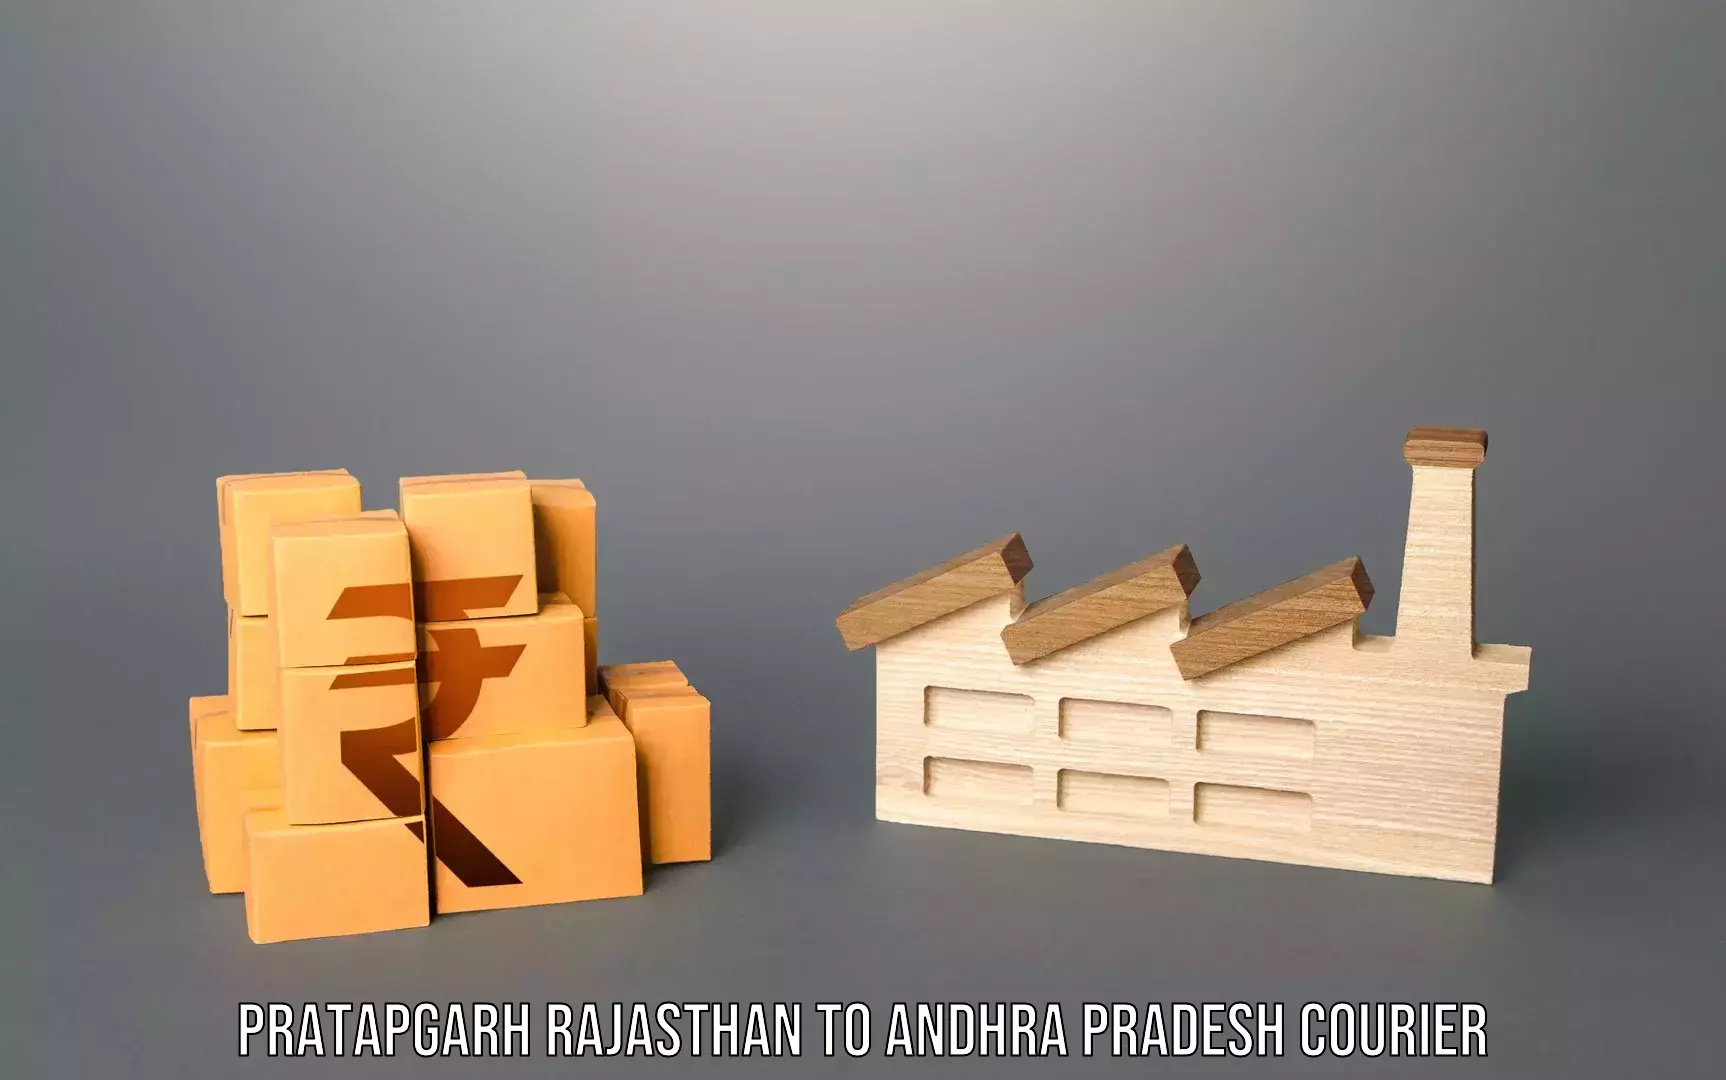 Luggage forwarding service Pratapgarh Rajasthan to Andhra Pradesh